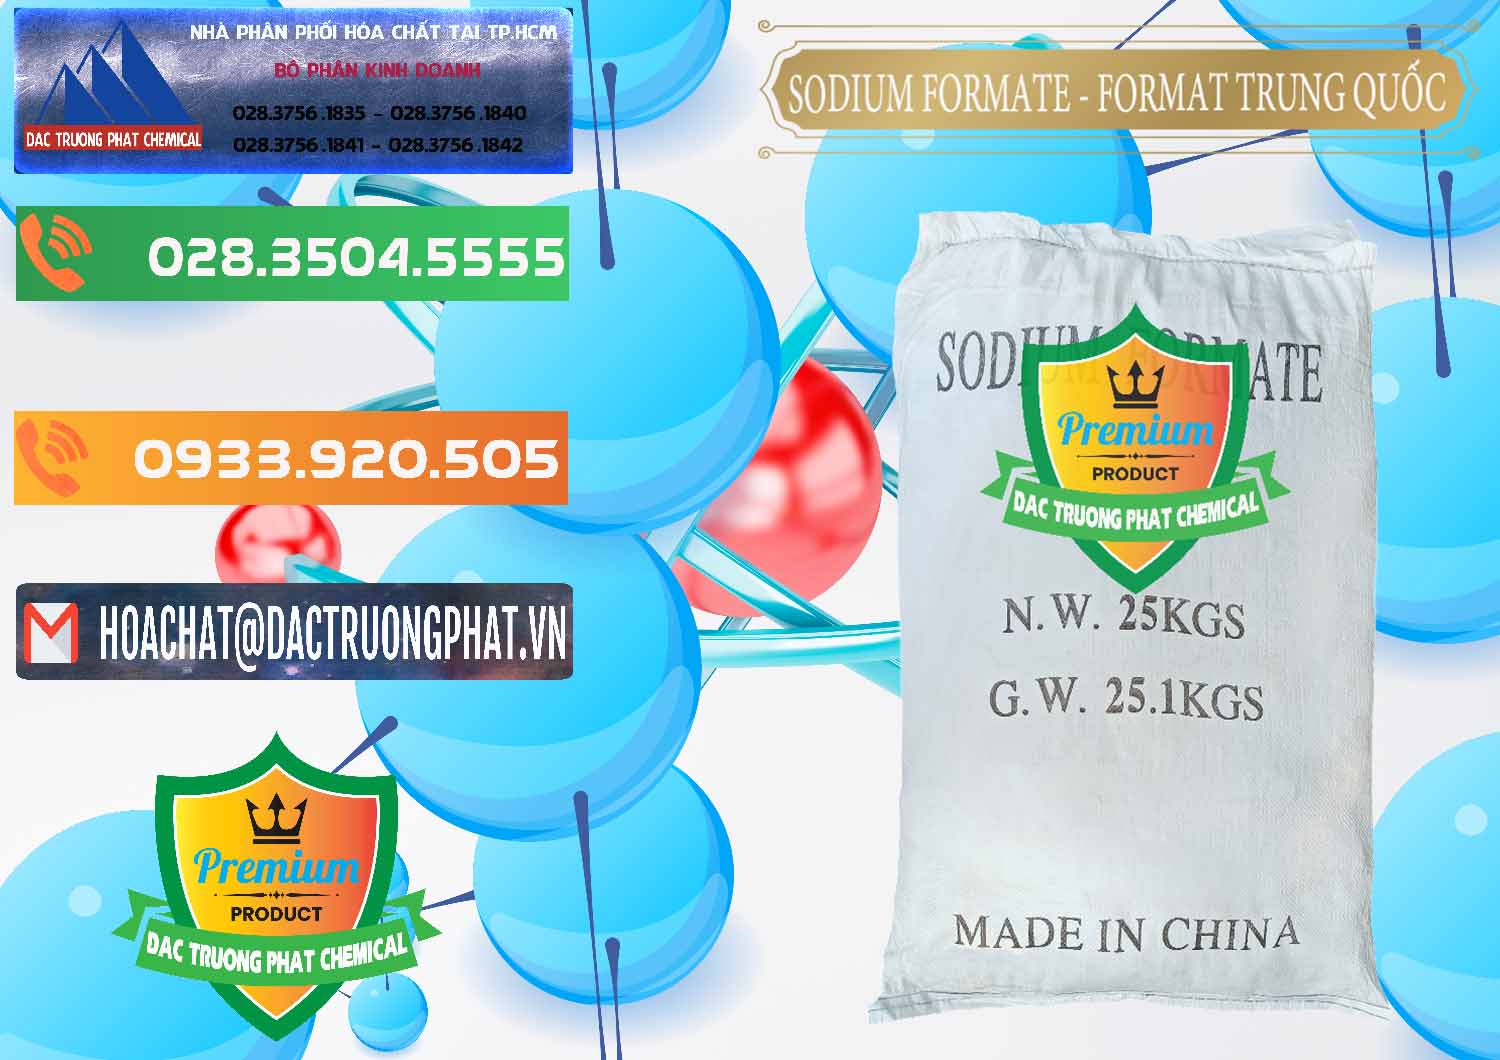 Đơn vị chuyên phân phối và bán Sodium Formate - Natri Format Trung Quốc China - 0142 - Chuyên kinh doanh & phân phối hóa chất tại TP.HCM - hoachatxulynuoc.com.vn